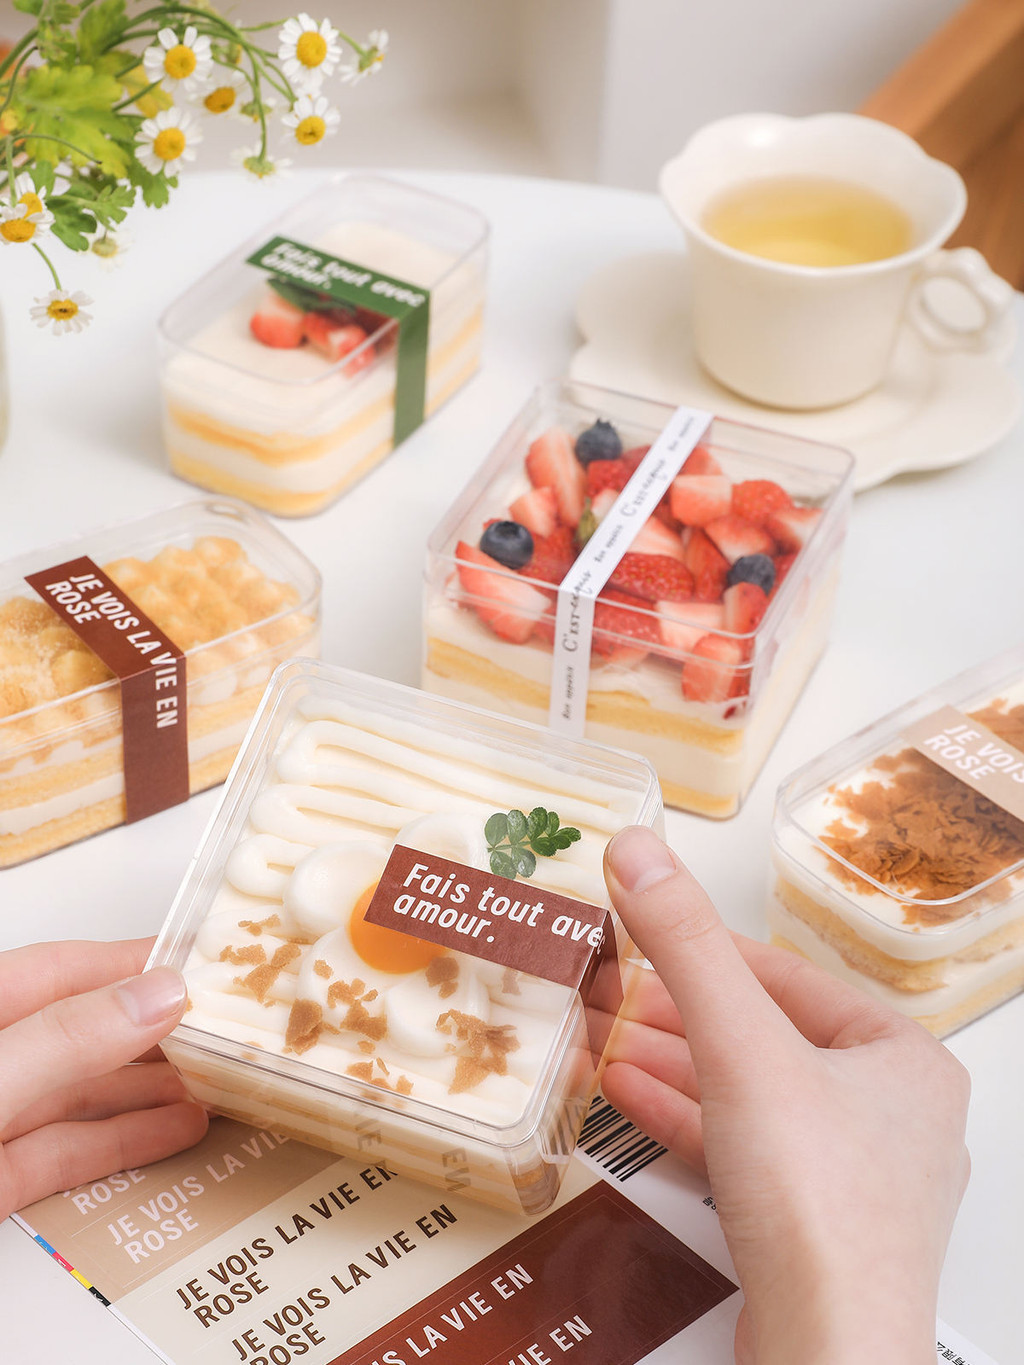 草莓寶盒透明盒 塑膠盒 提拉米蘇盒子蛋糕包裝盒透明豆乳慕斯千層餅乾一次性甜點 點心打包盒 點心餅乾保鮮盒收納盒包裝盒